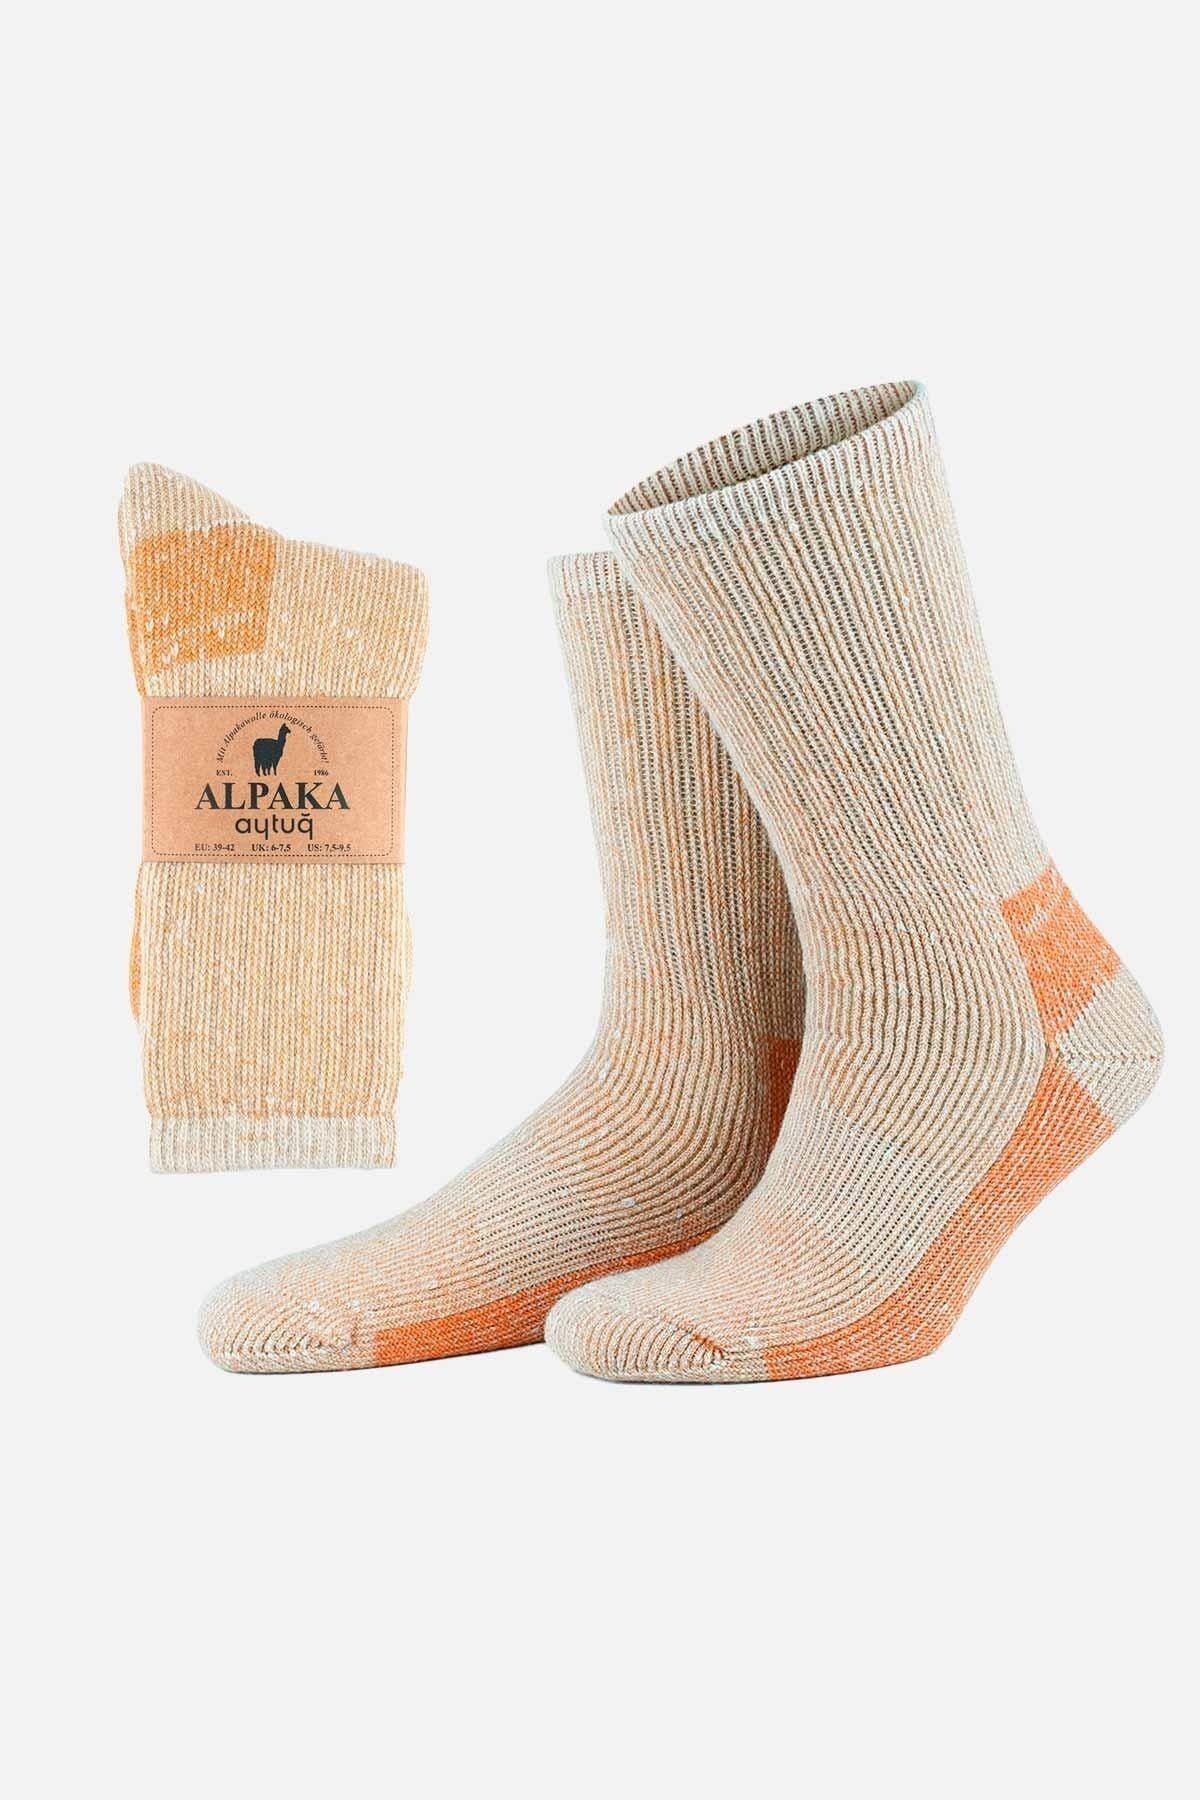 Aytuğ Unisex Alpaka Yünü Havlu Kışlık Ekru/turuncu Soket Çorap - A-6006